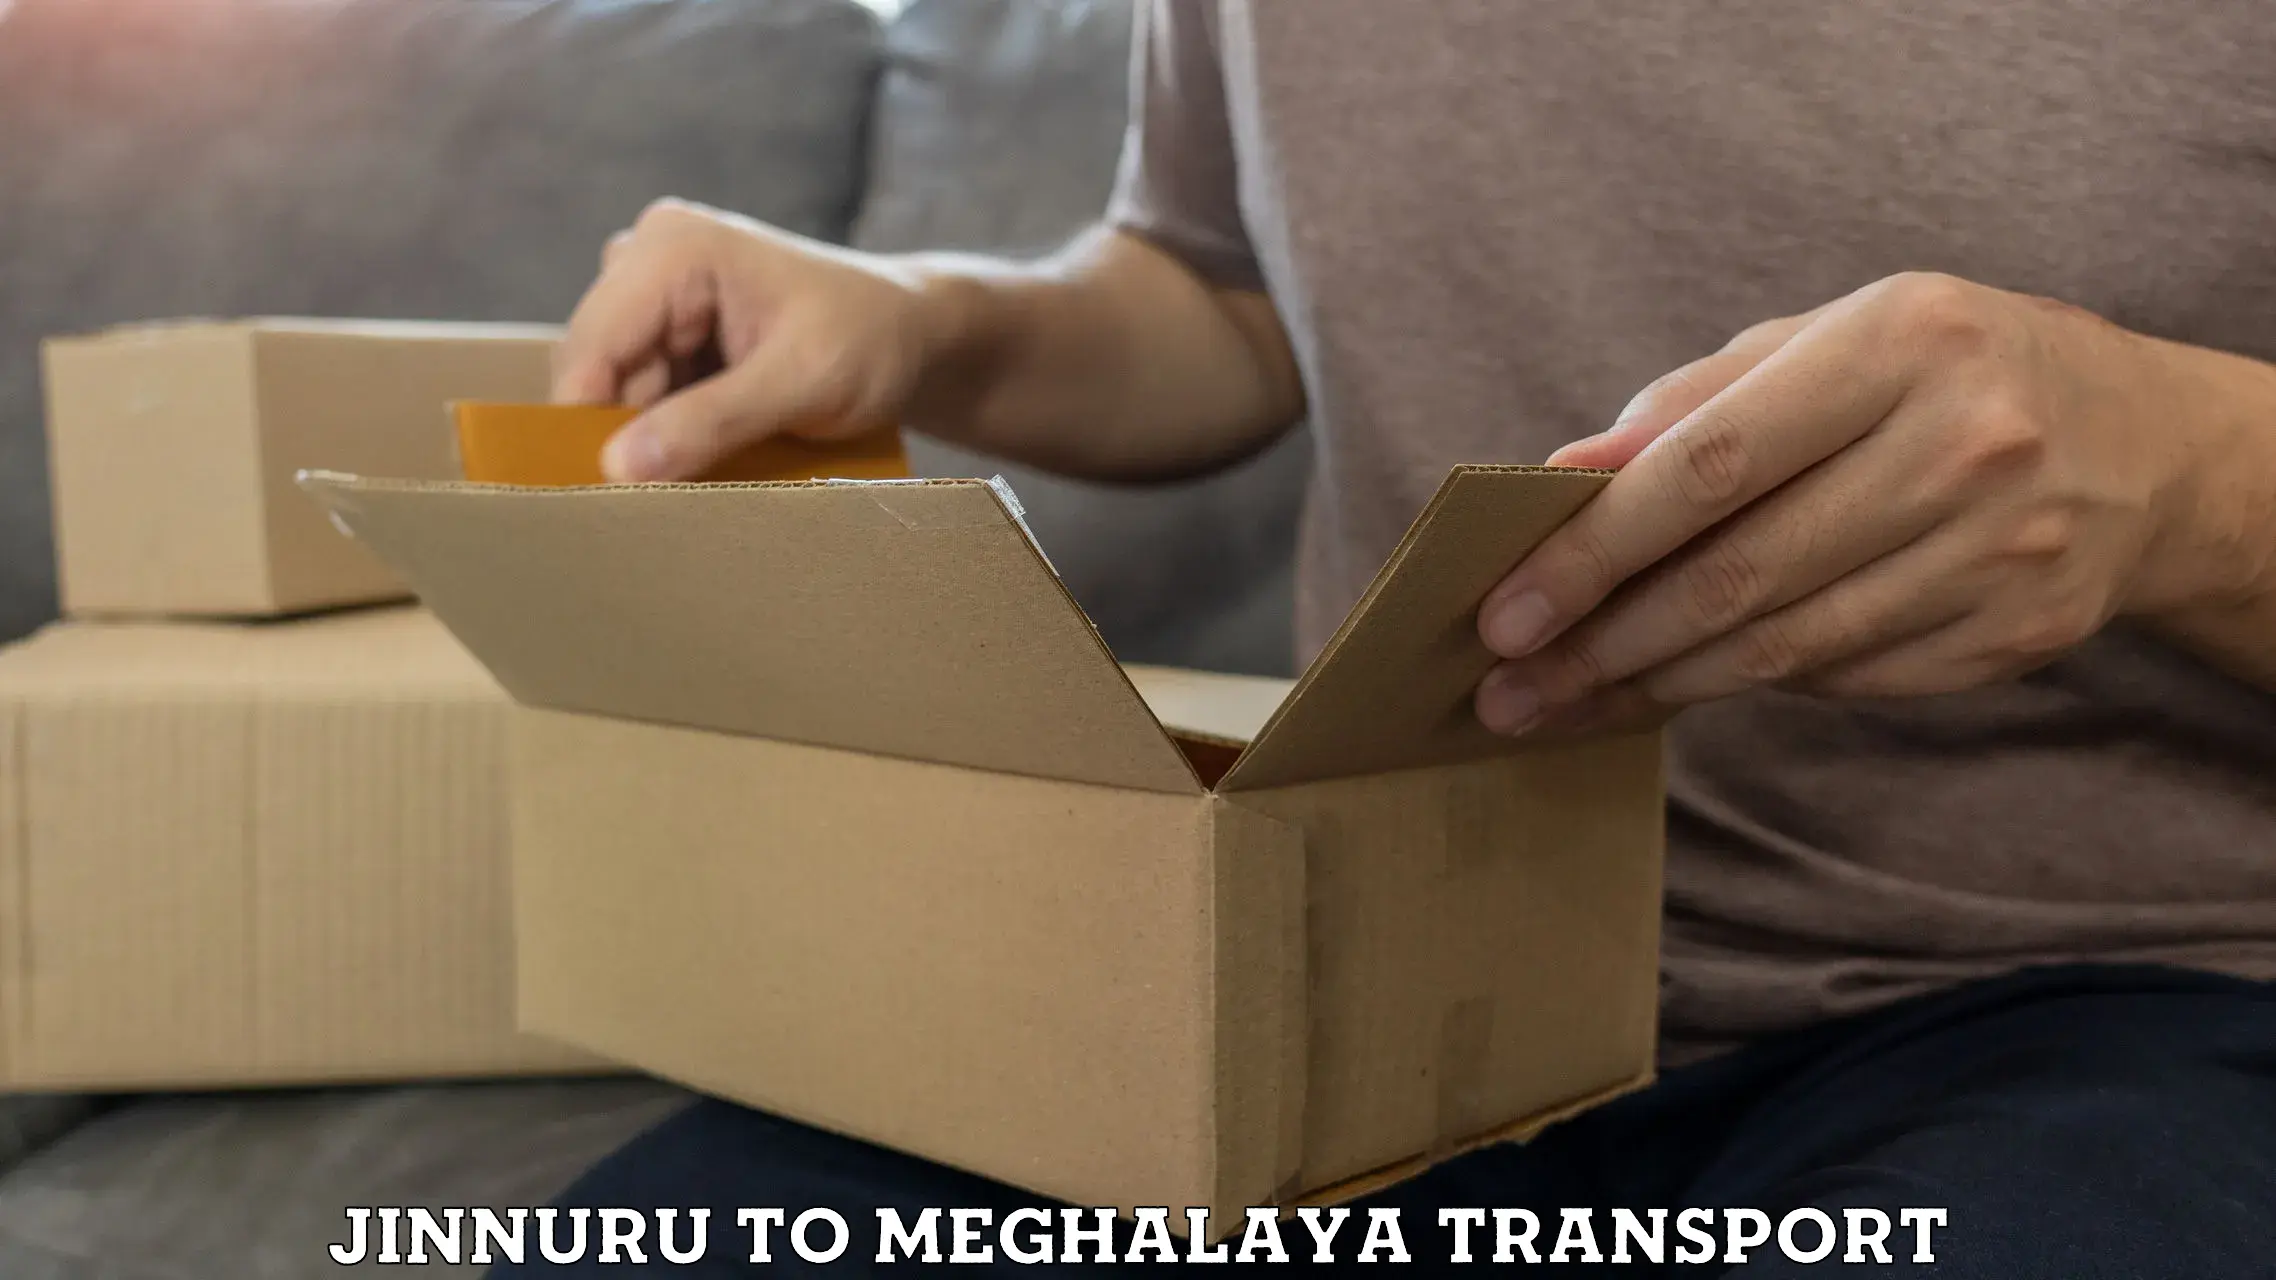 Delivery service Jinnuru to Garobadha